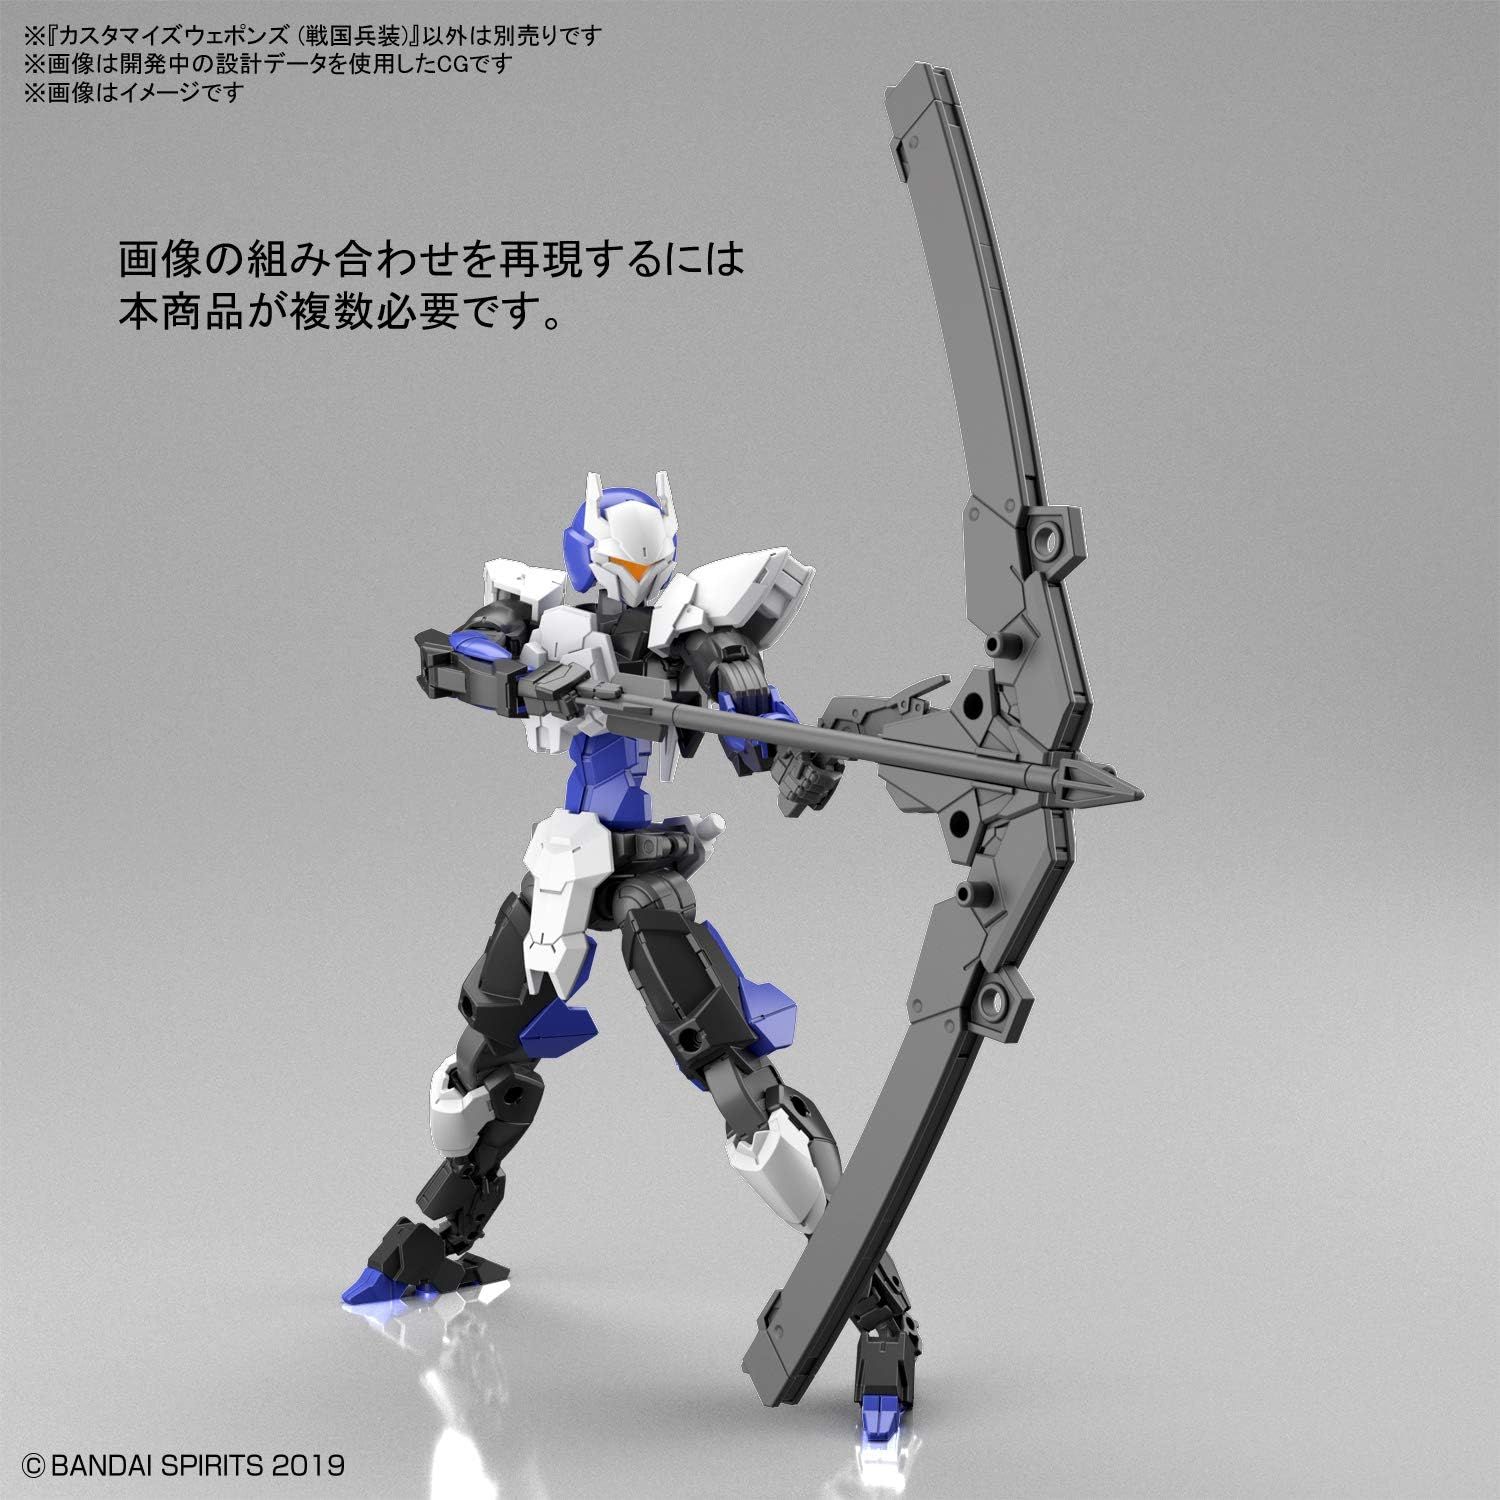 Bandai 30MM W011 Customize Weapons (Sengoku Equipment) - BanzaiHobby